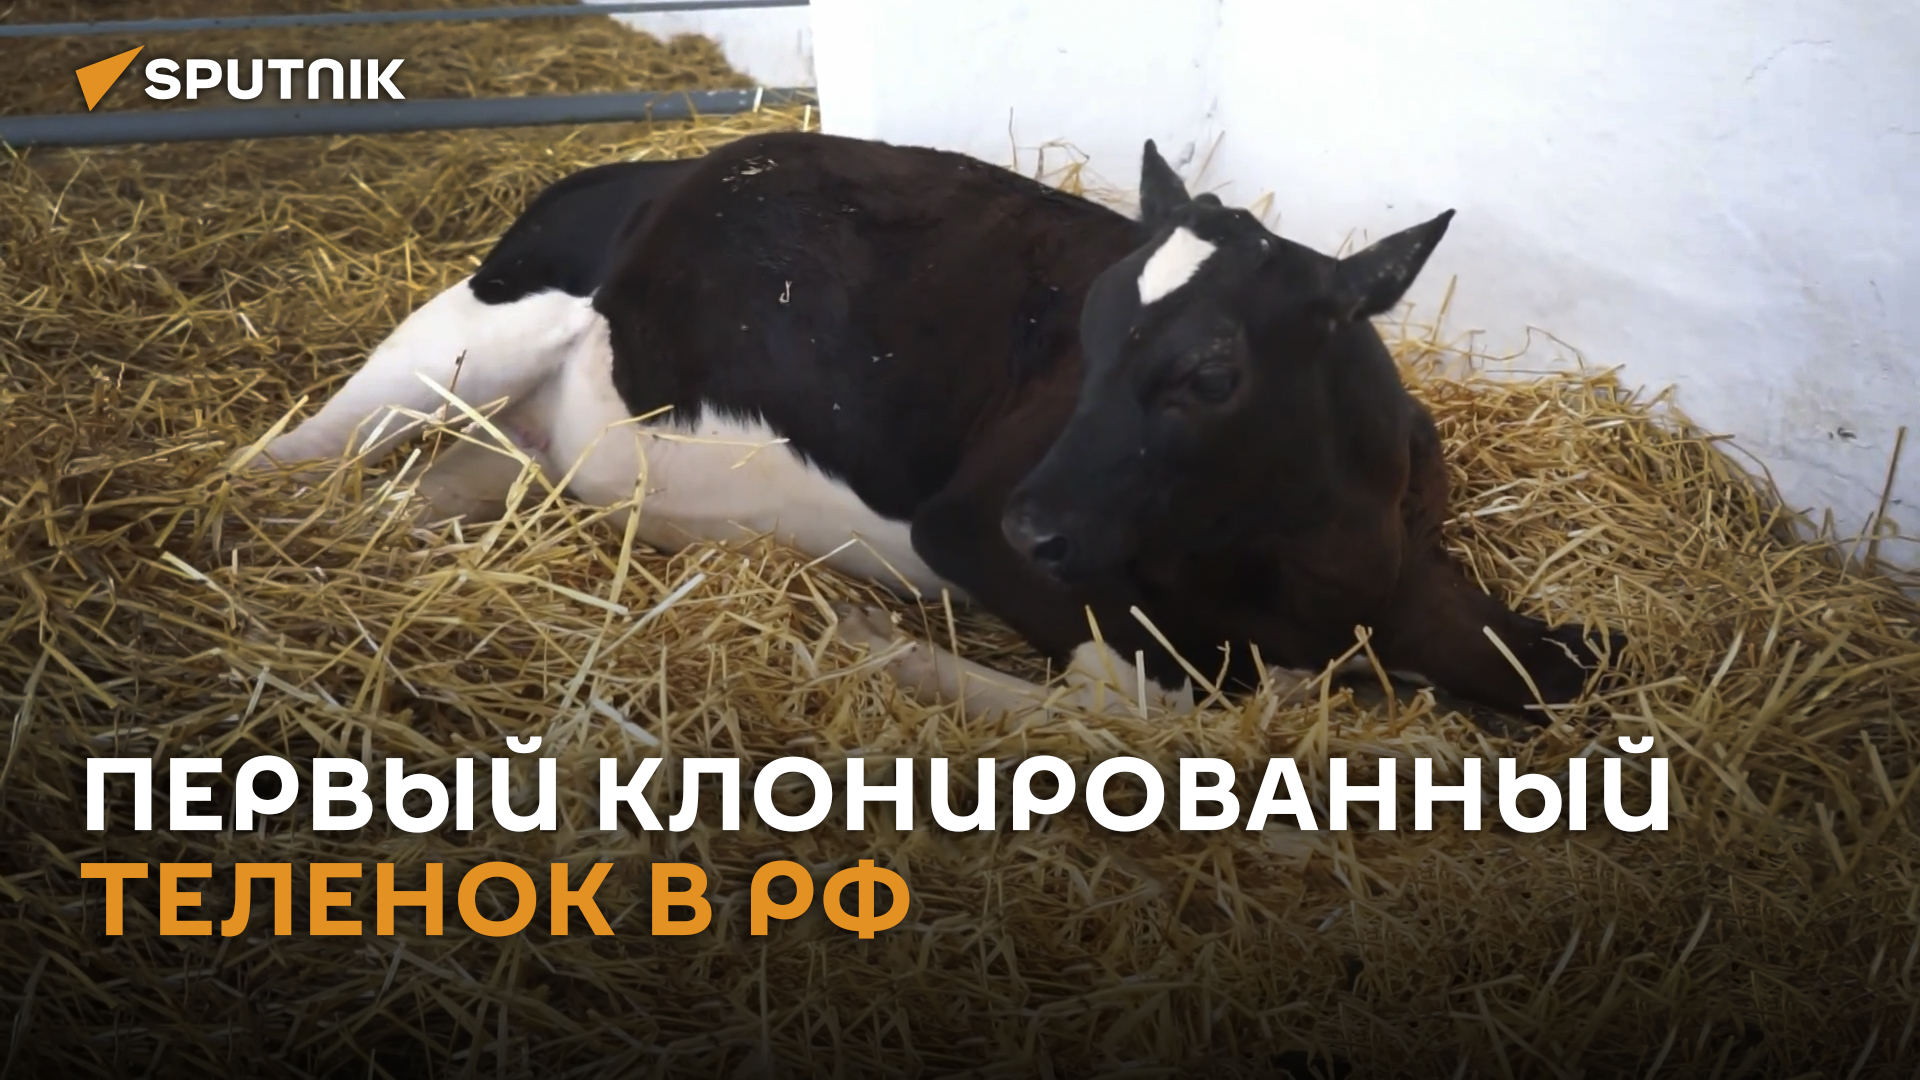 Копия мамы: первого российского теленка-клона показали на видео